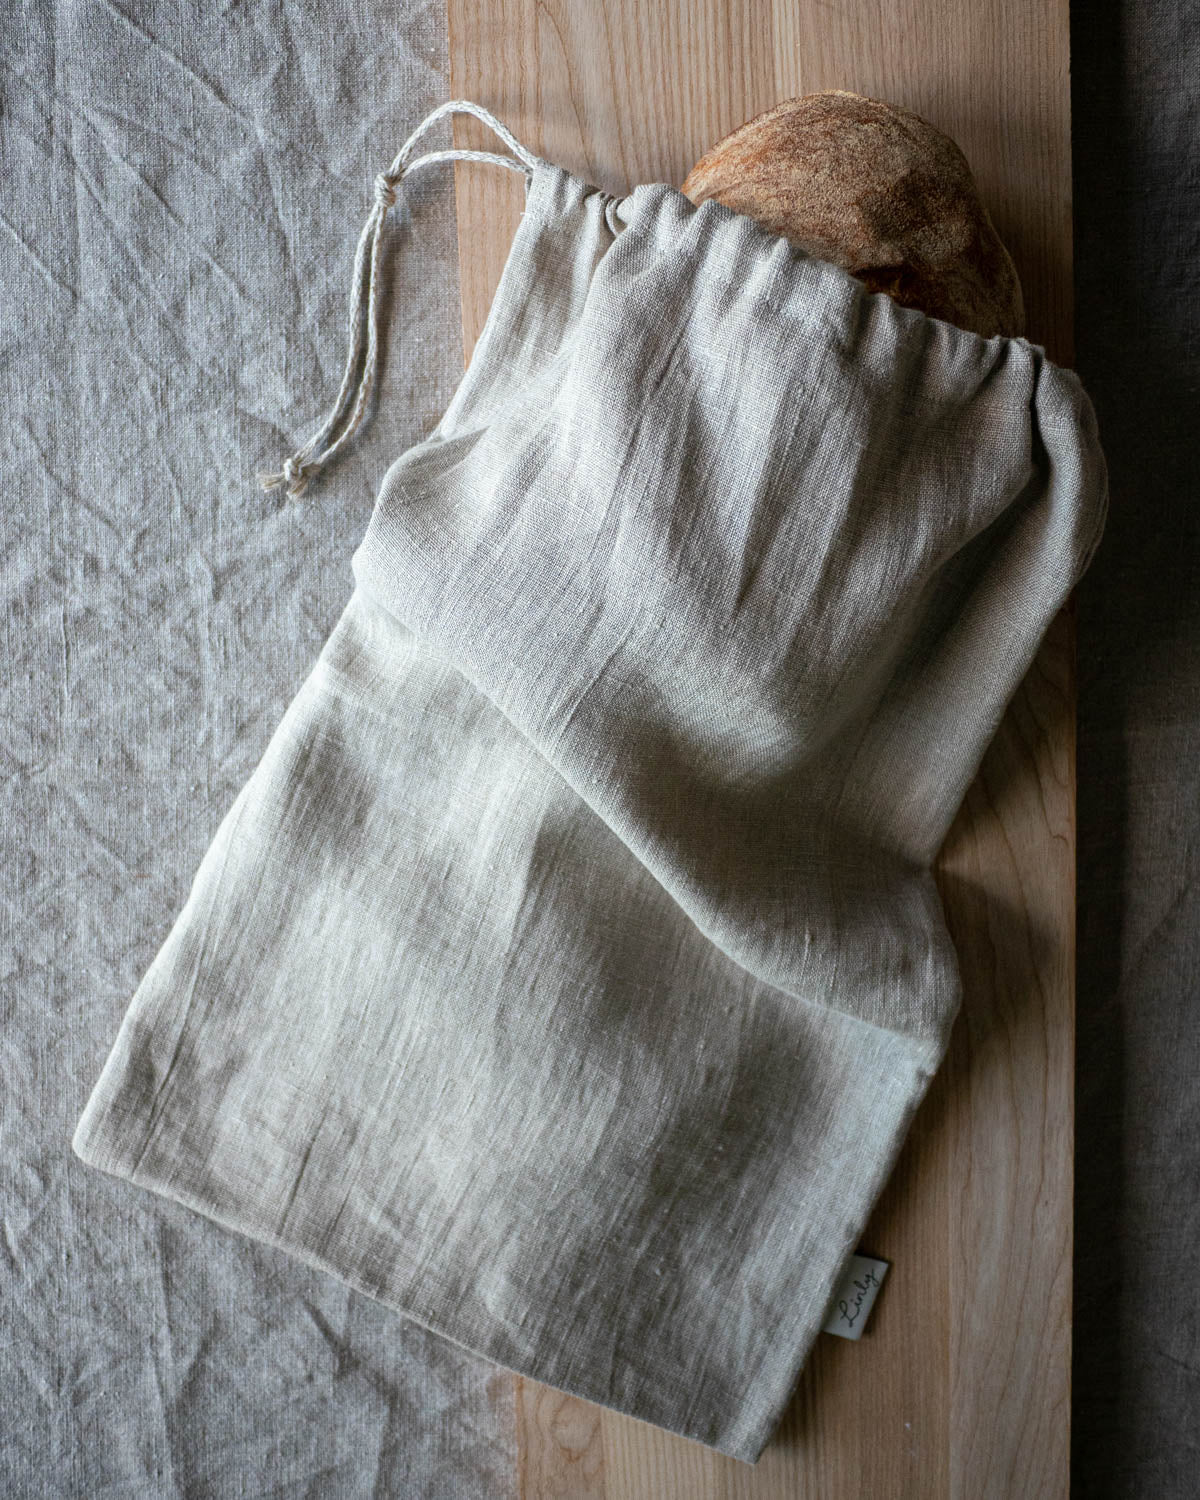 Brödpåse i linne ligger på en skärbräda på en linneduk. Påsen innehåller ett suredgsbröd som skymtar ut genom öppningen.